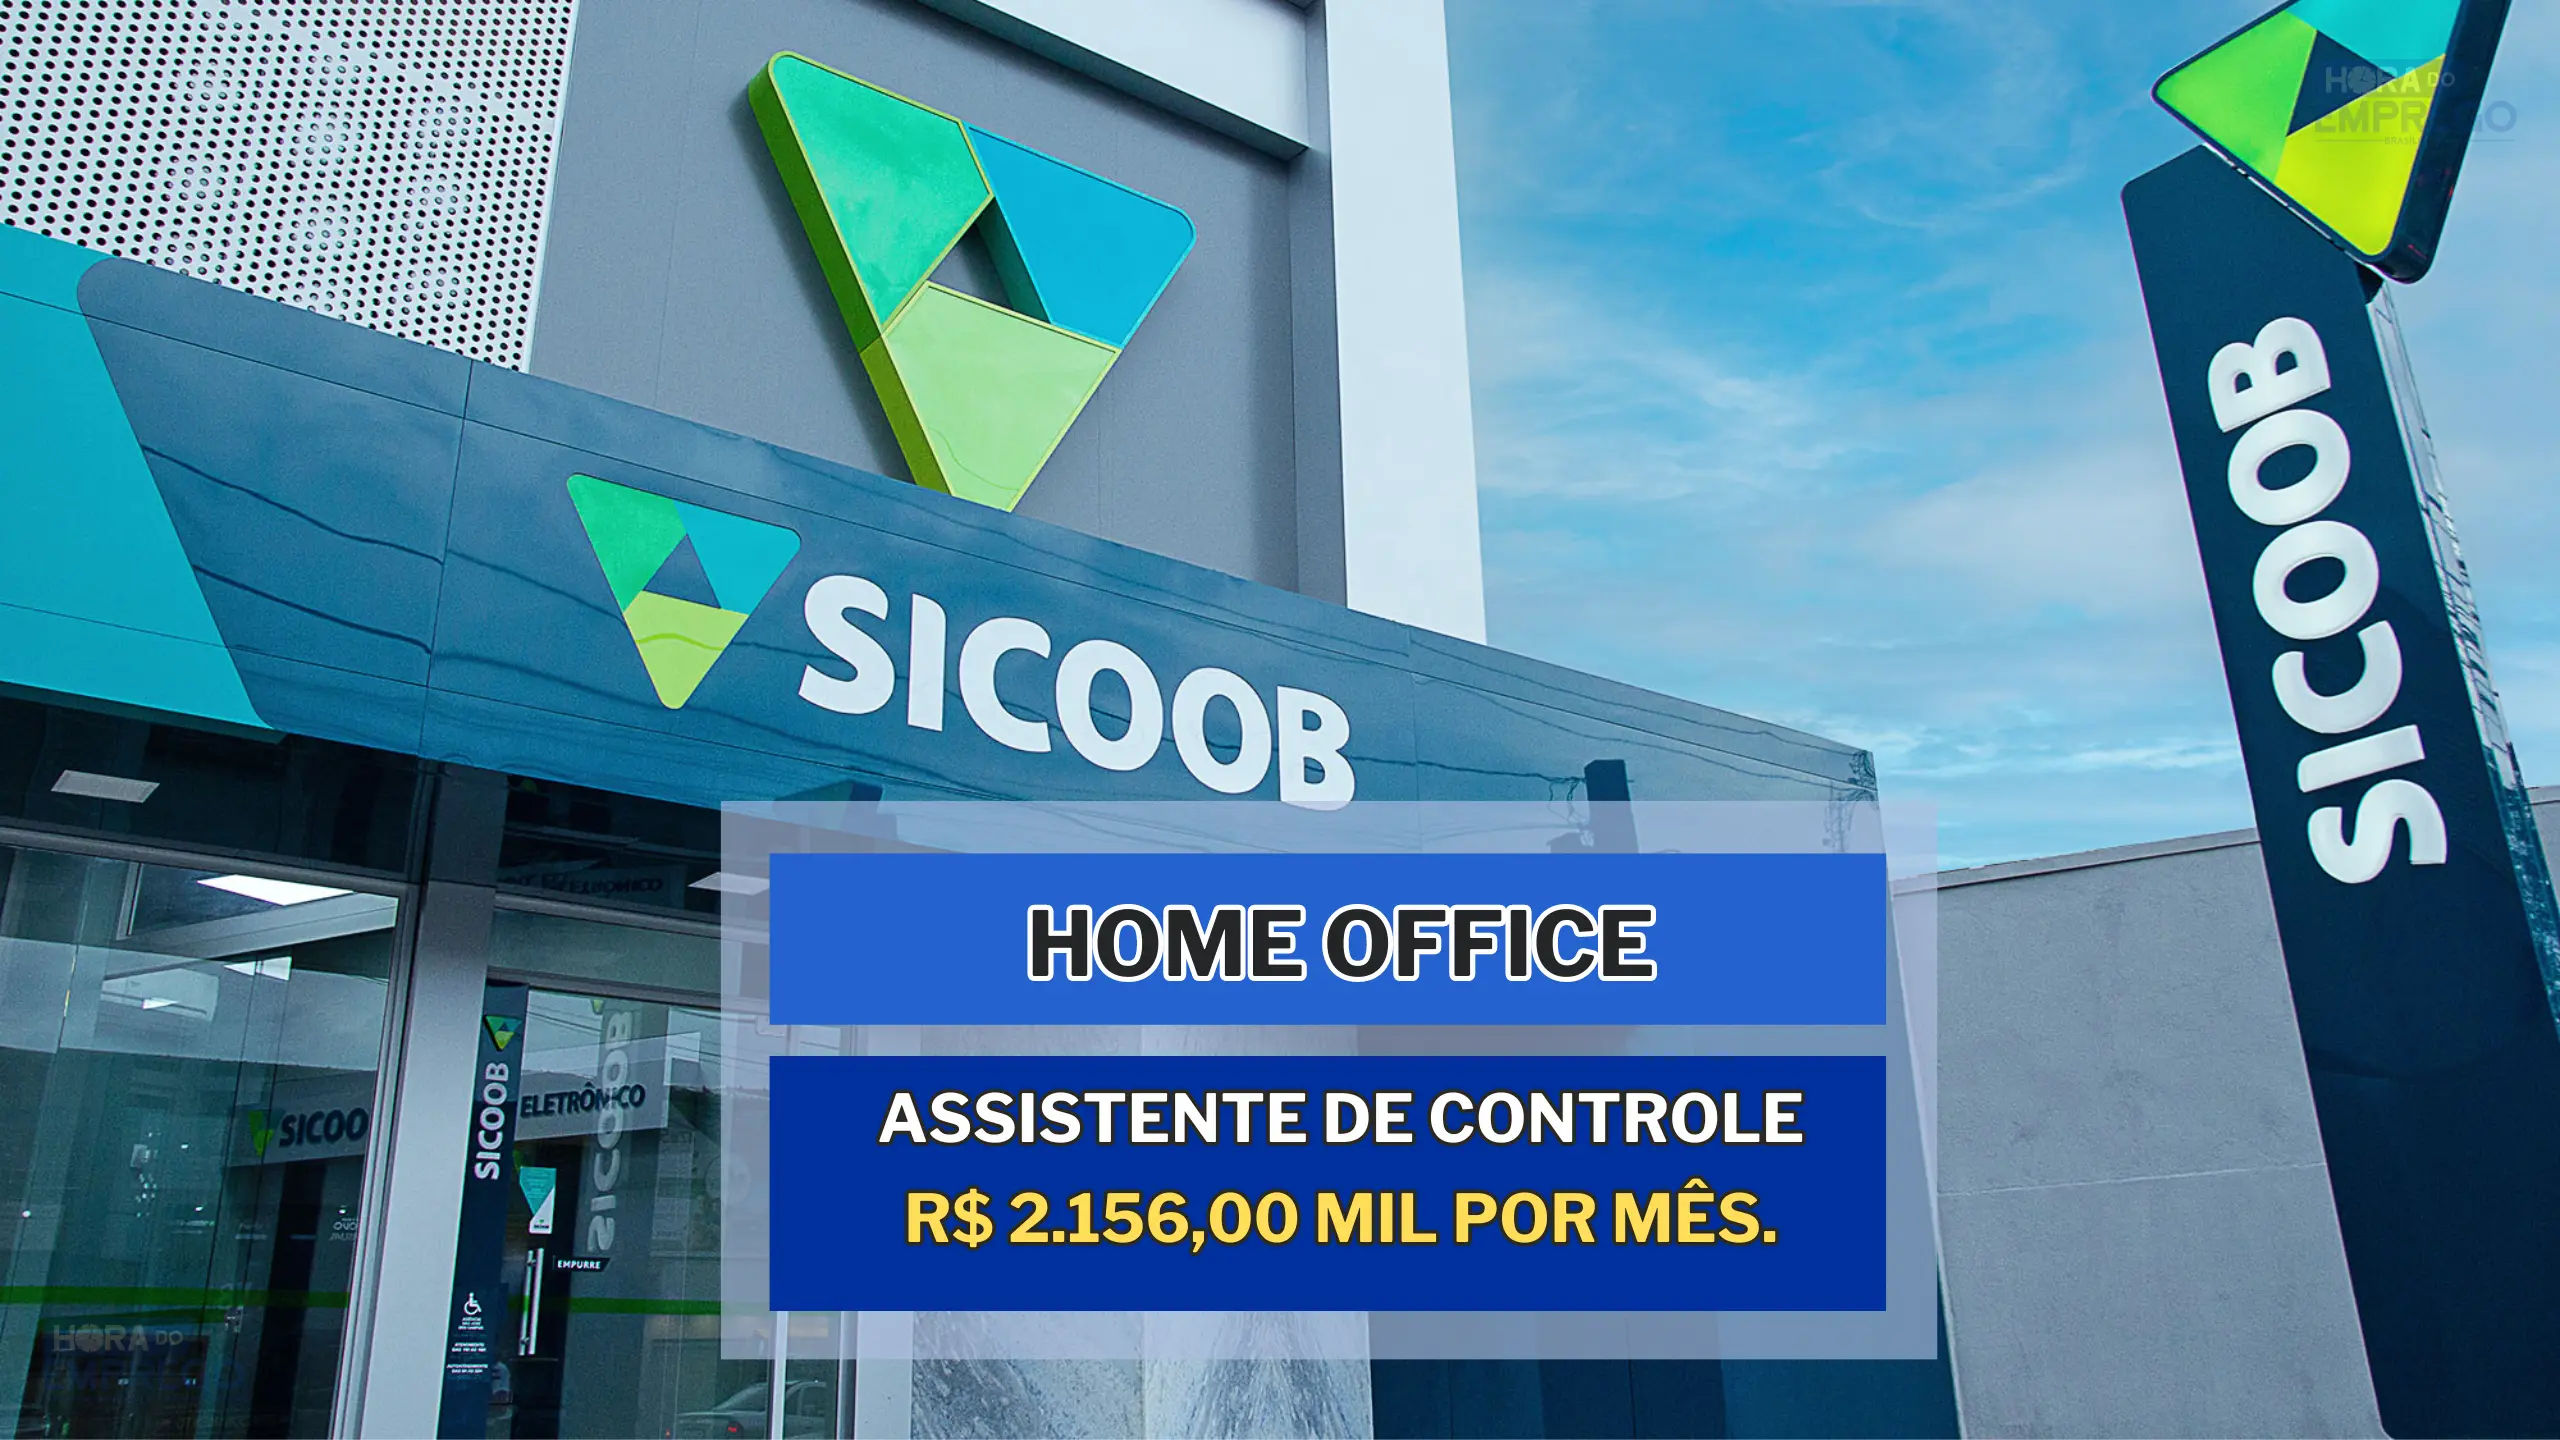 Banco Sicoob abriu vaga HOME OFFICE par Assistente de Controle e oferece um salário de R$ 2.156,00 mil por mês.